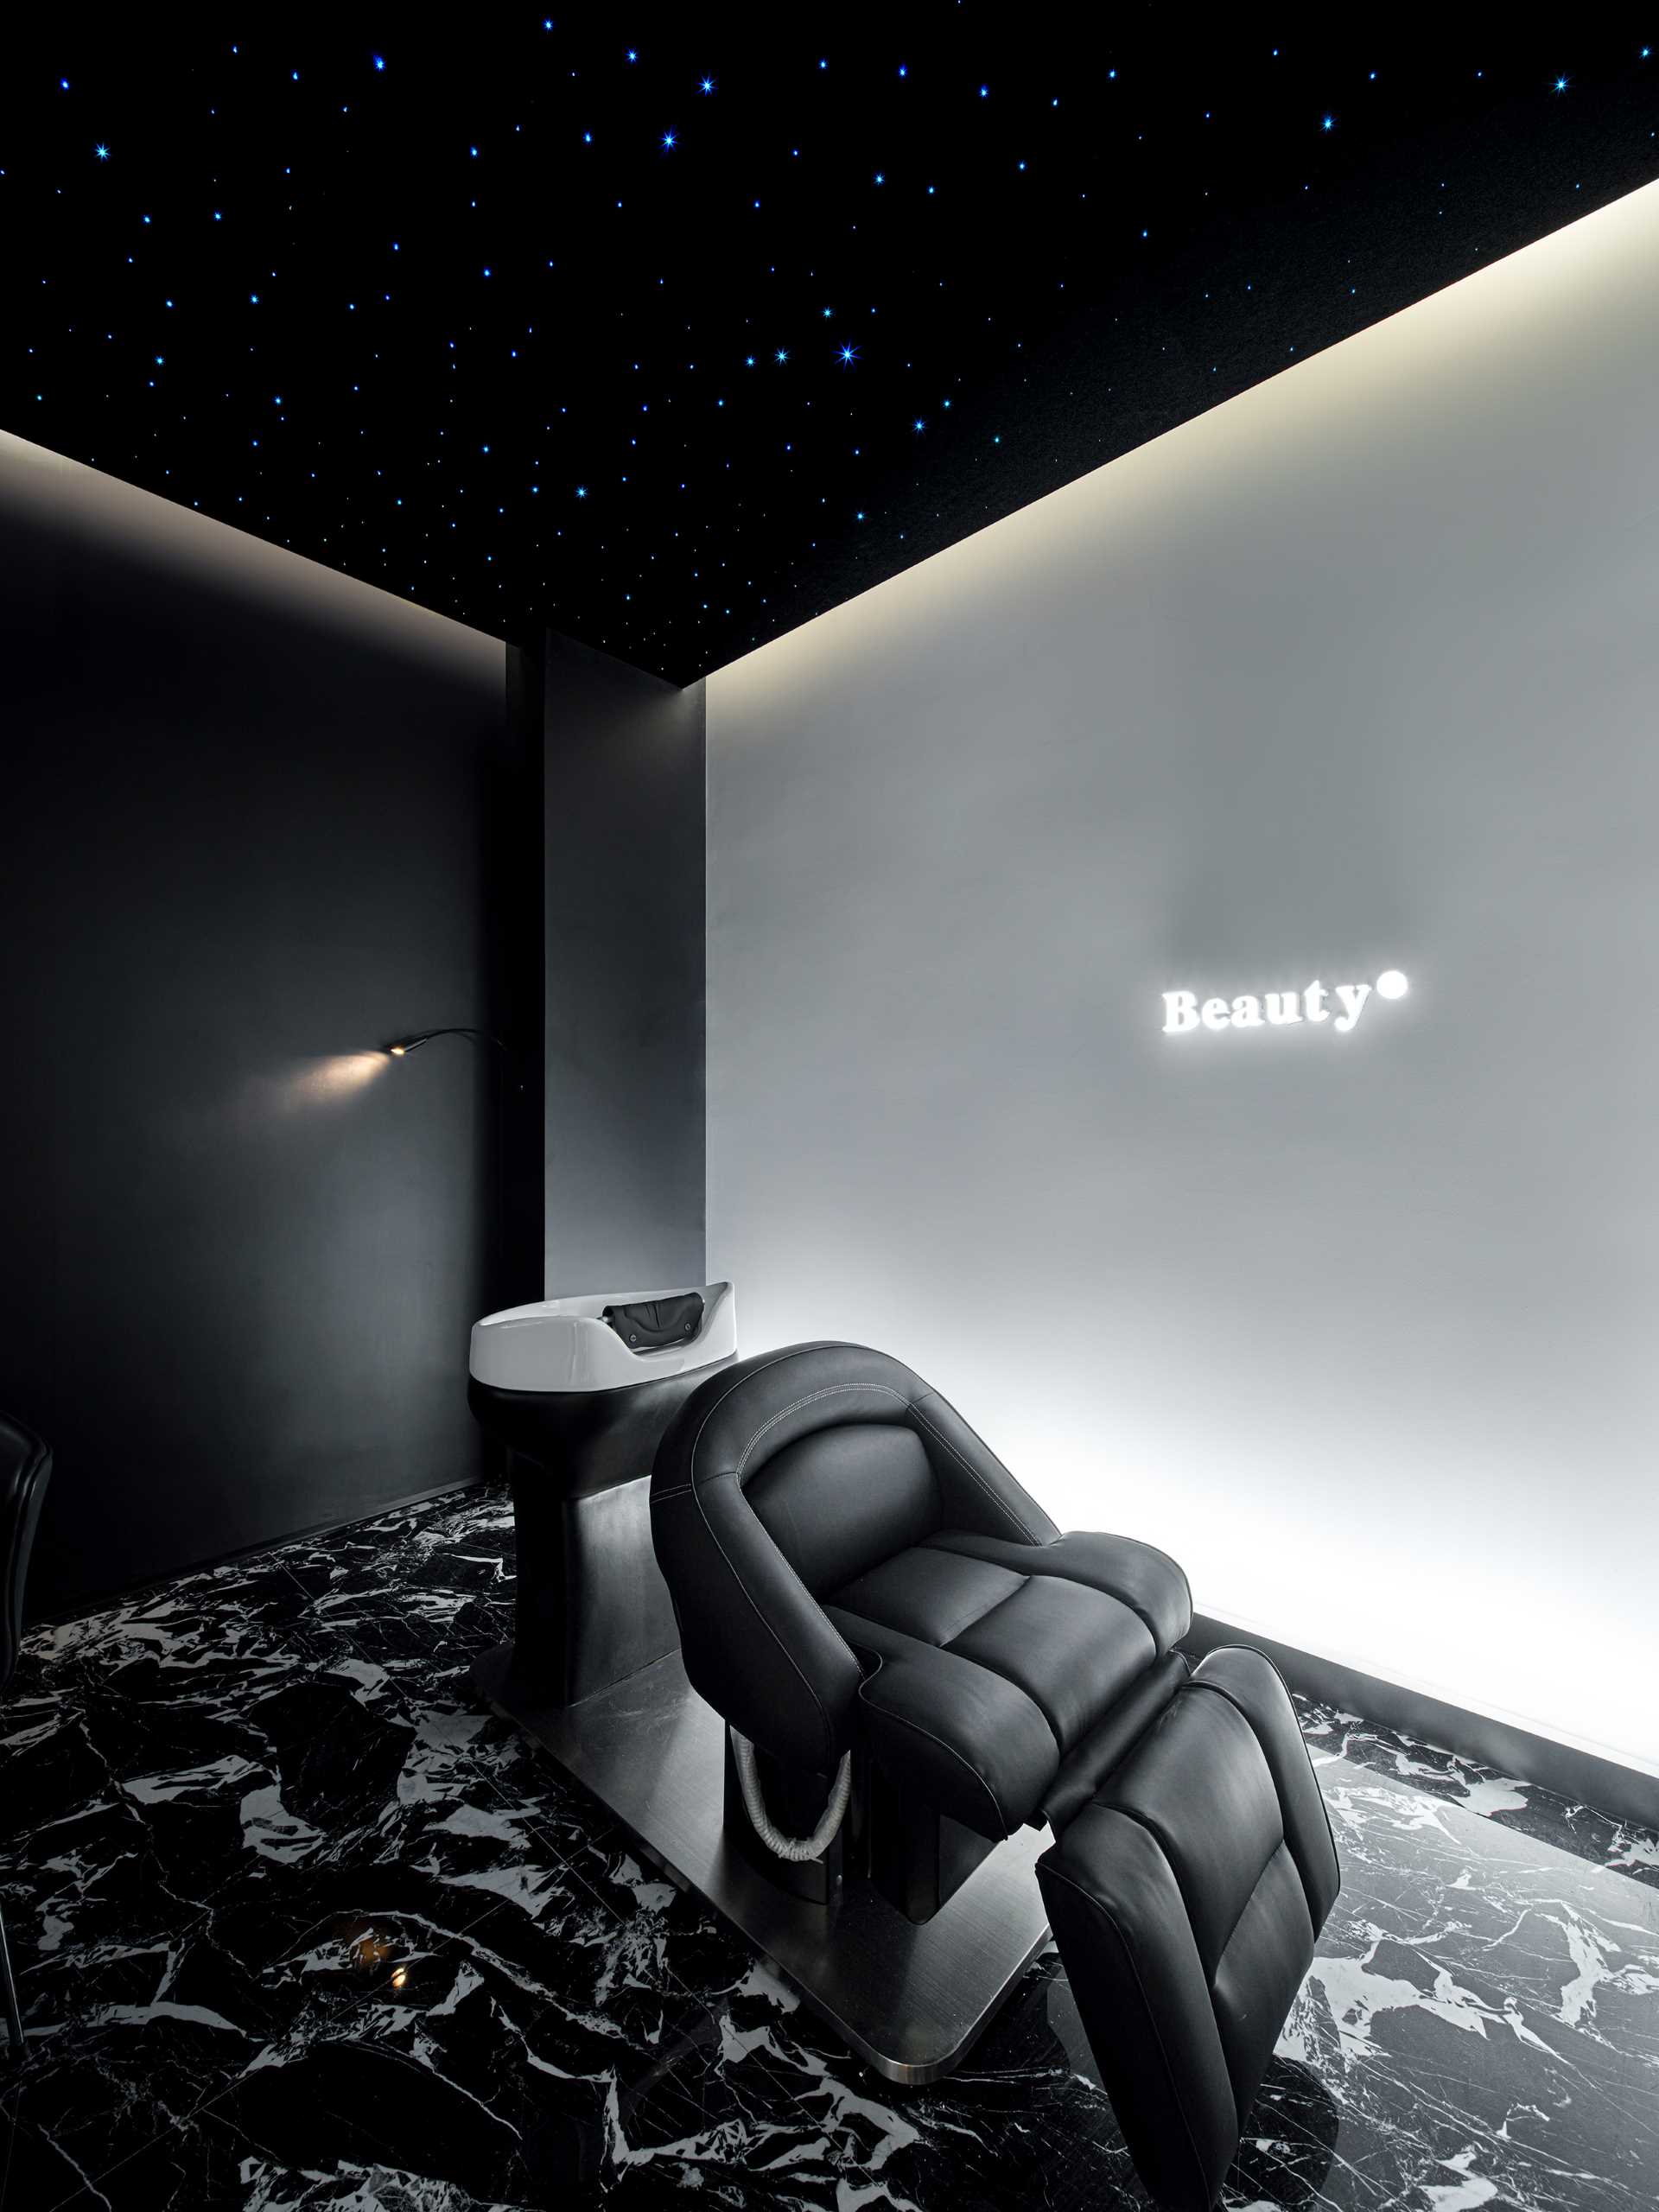 اتاق اسپا سر با سقف آسمان پر ستاره تیره مبله شده است که فضایی آرام و راحت را ایجاد می کند و برای خدمات مراقبت از سر و آرایش ایده آل است.